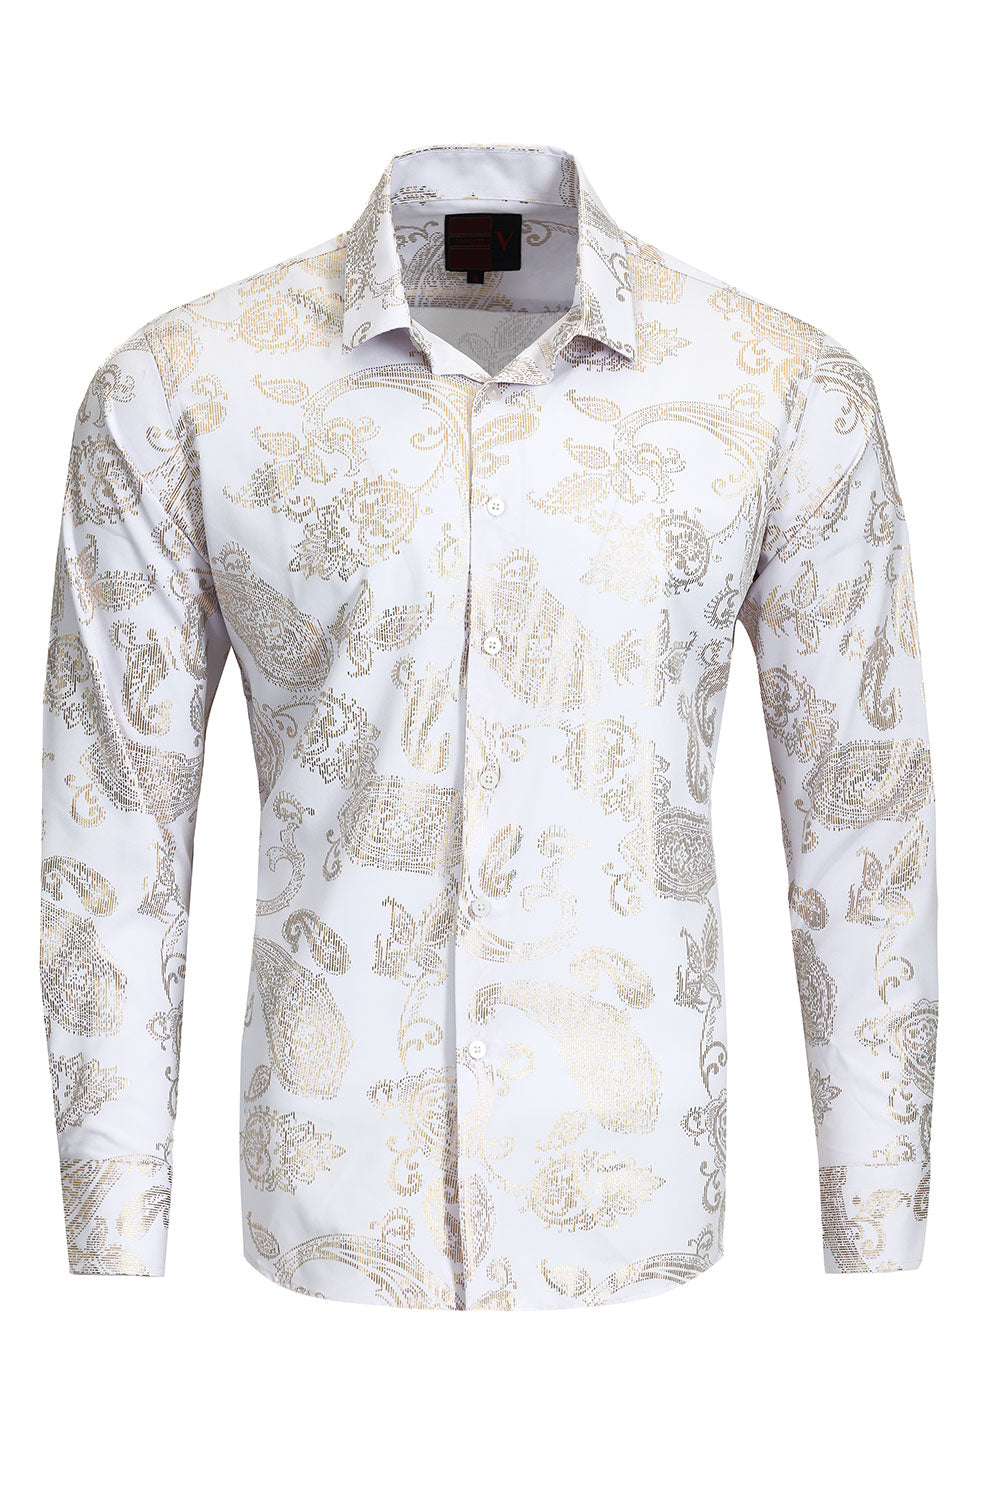 Vassari Mens Paisley Shiny Print Design Button Down Luxury Shirt  2VS153 White and Gold